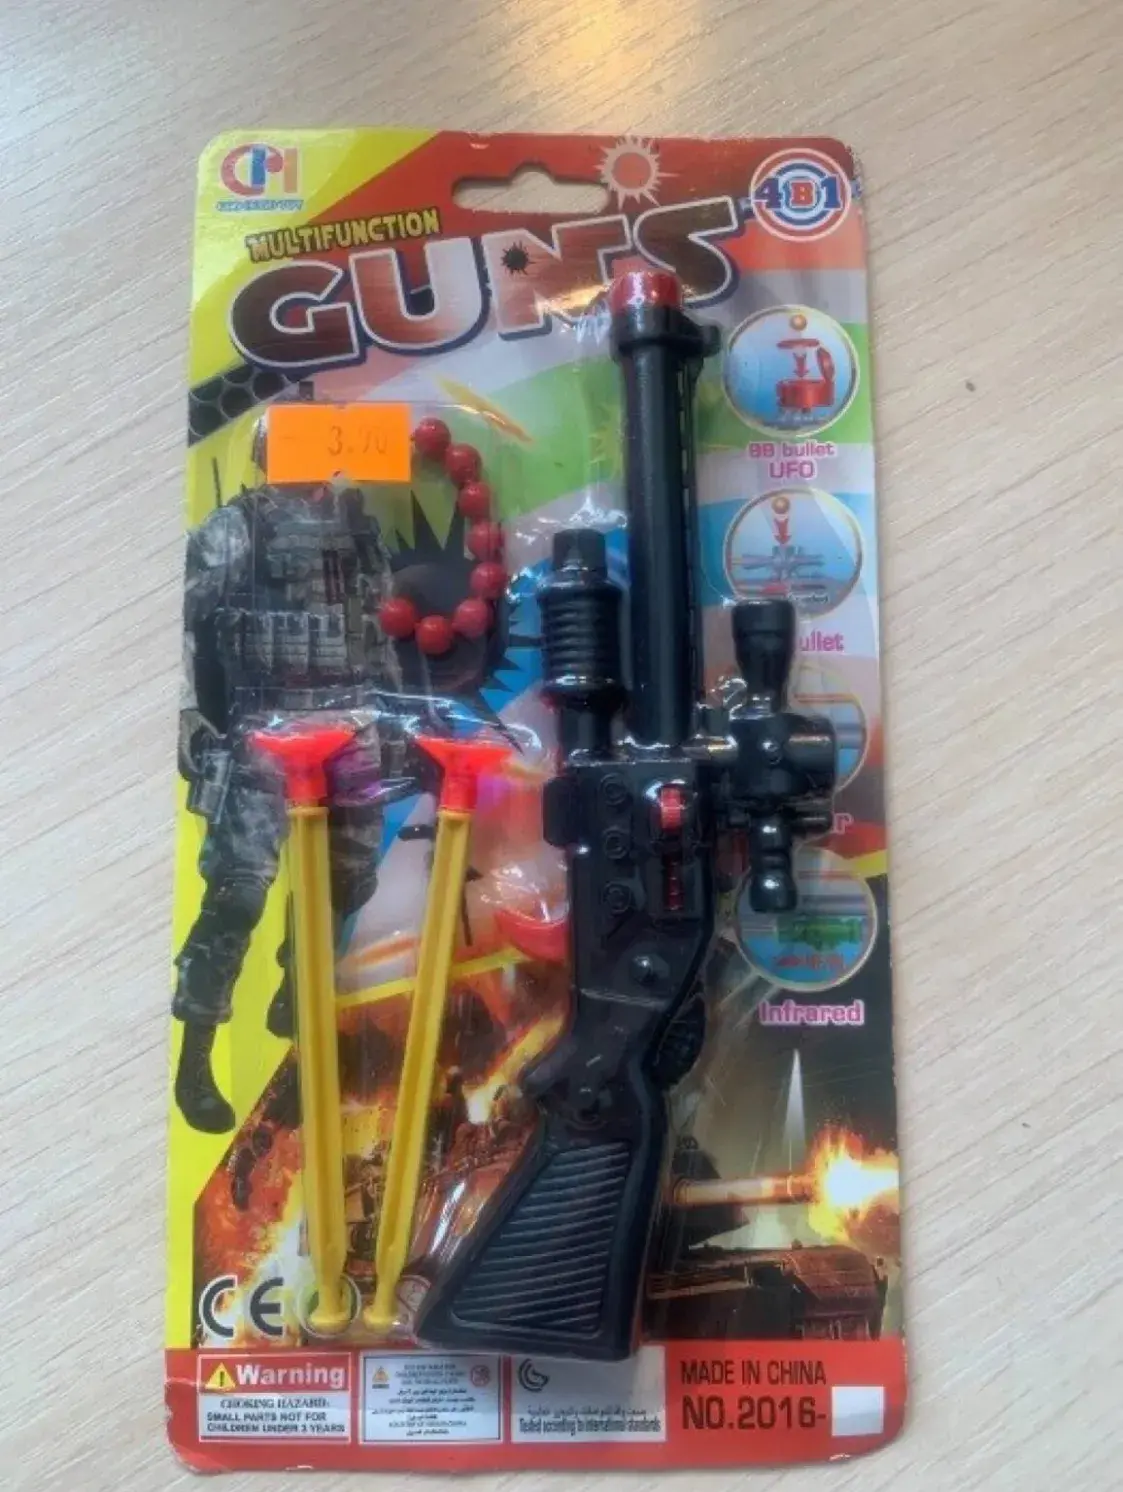  В магазинах Гродненской области обнаружили опасные детские пистолеты